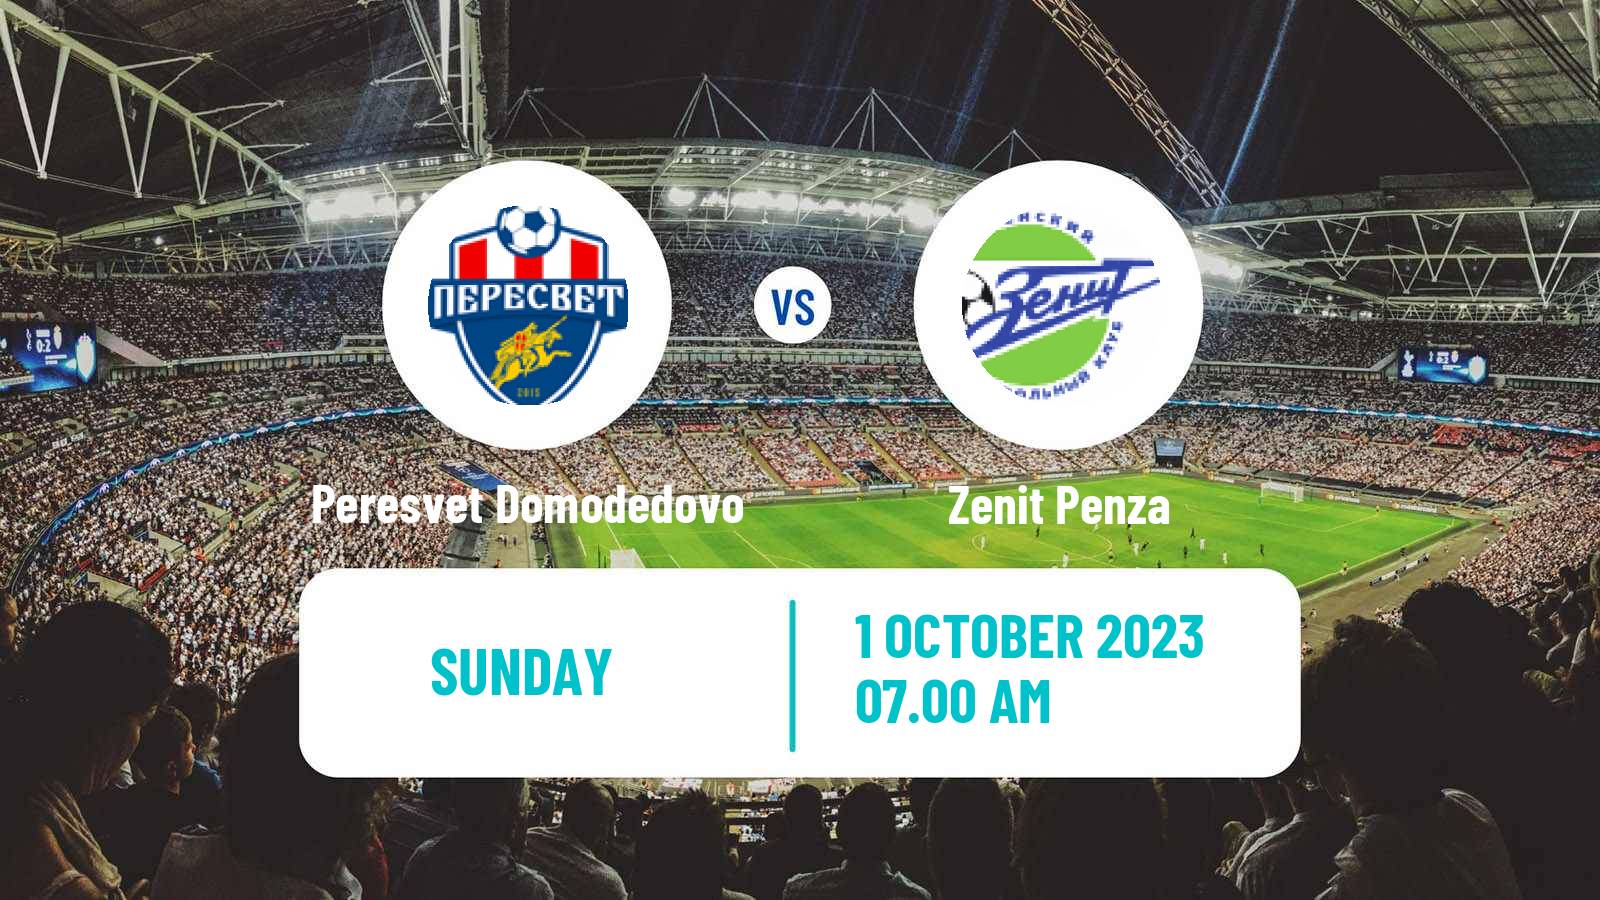 Soccer FNL 2 Division B Group 3 Peresvet Domodedovo - Zenit Penza